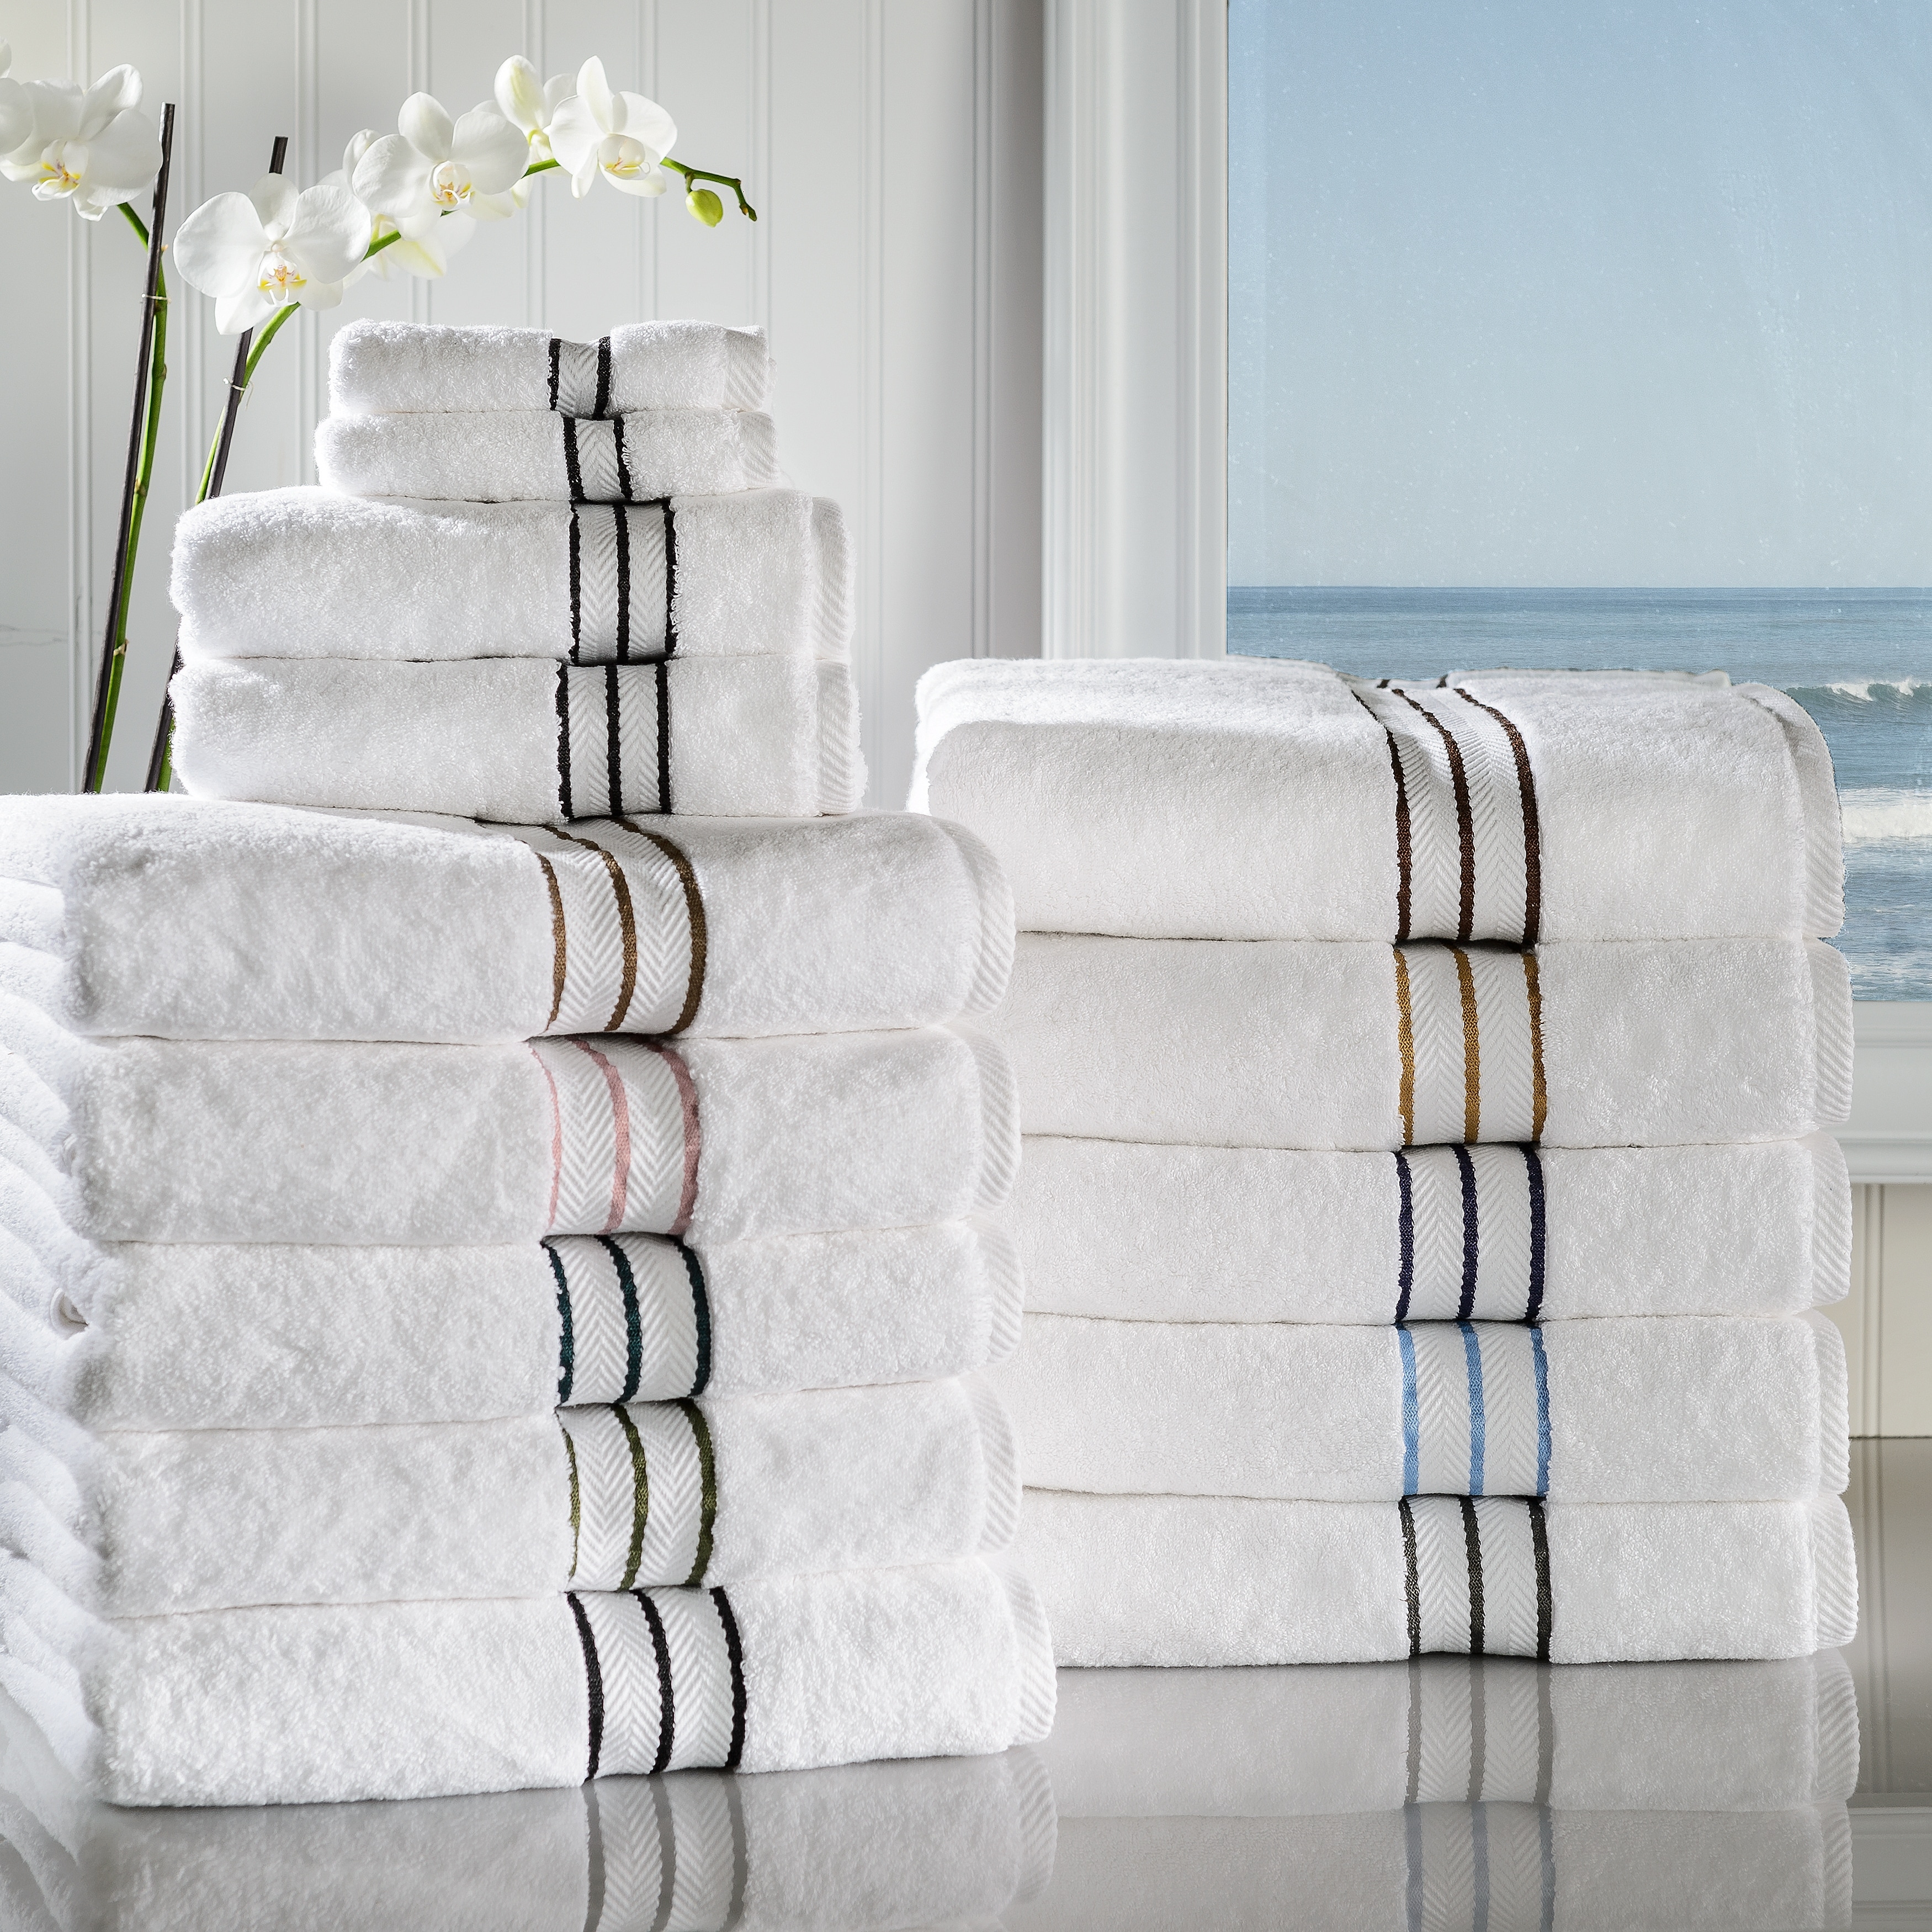 CANNON 100% Cotton Low Twist Bath Towels (30 in. L x 54 in. W